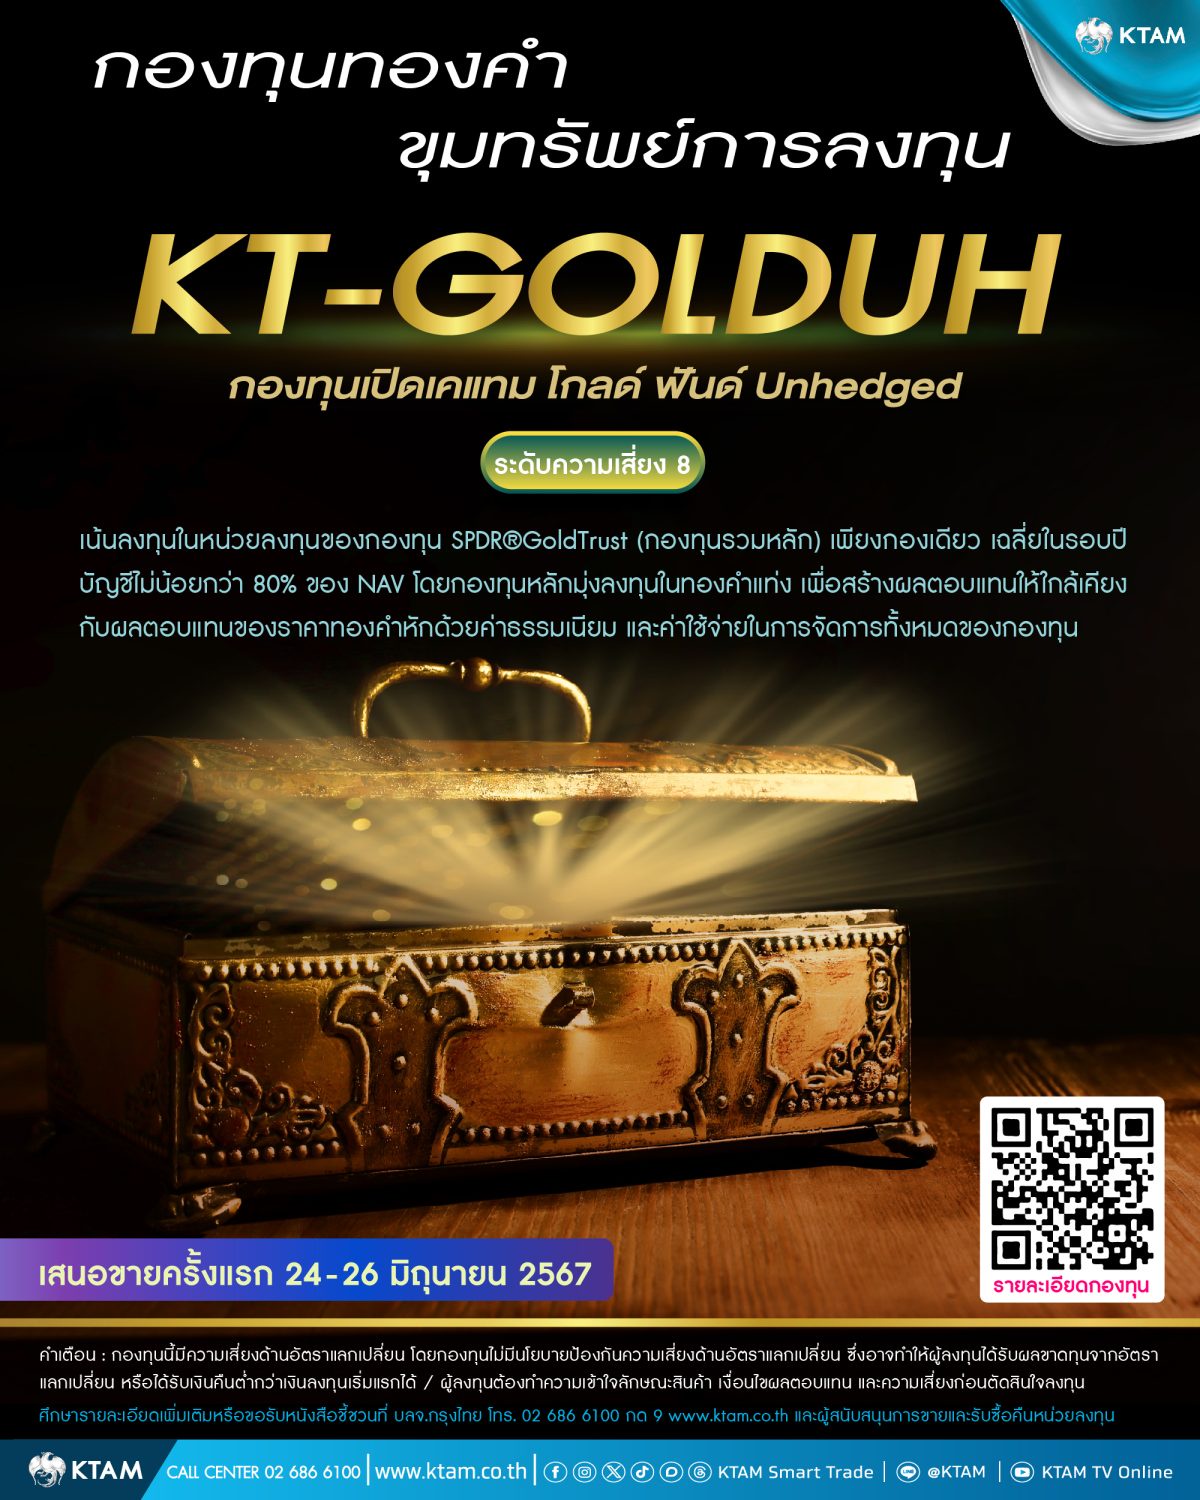 KTAM เปิดขาย KT-GOLDUH 24 - 26 มิ.ย. 67 นี้ มองทองคำน่าลงทุน พร้อมเพิ่มโอกาสสร้างผลตอบแทนจากค่าเงิน